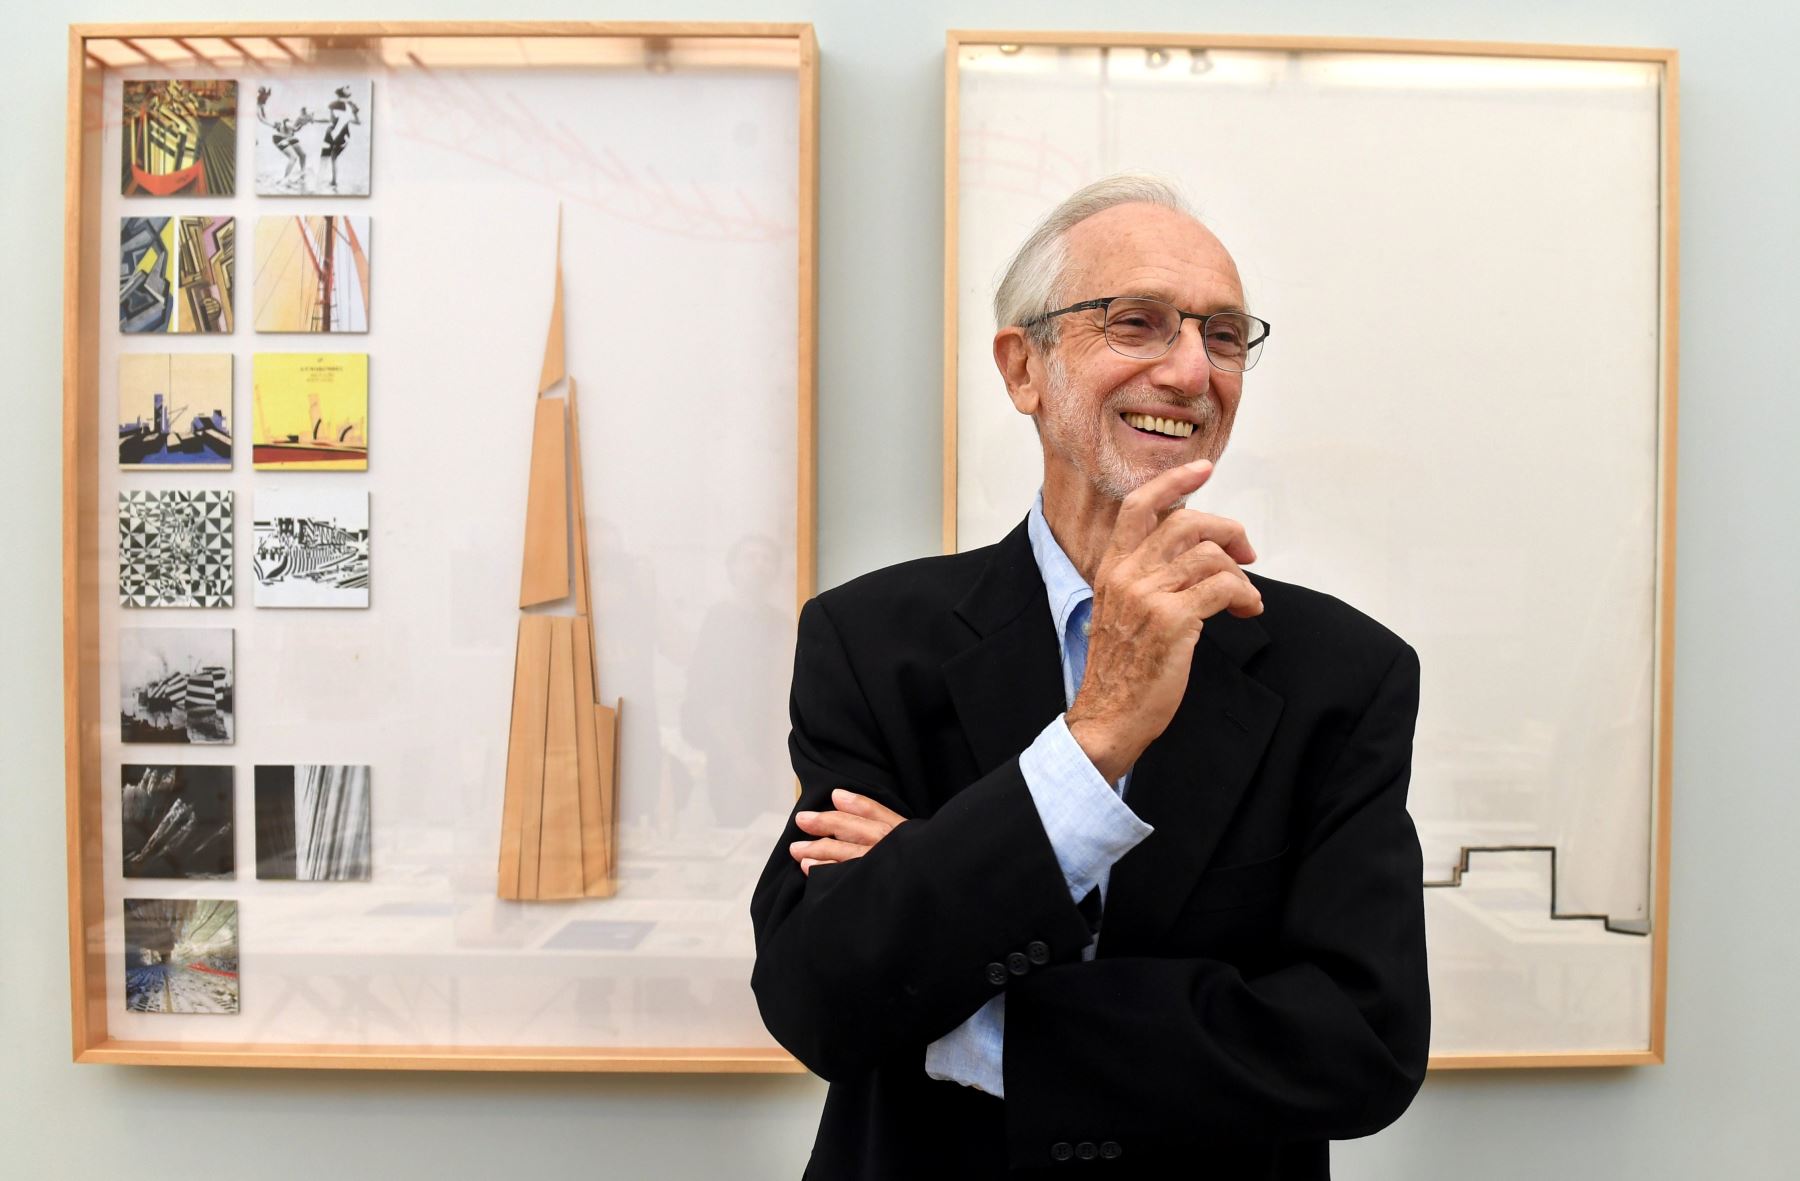 El artista italiano Renzo Piano sonríe durante la presentación de su exposición en Londres Foto: EFE